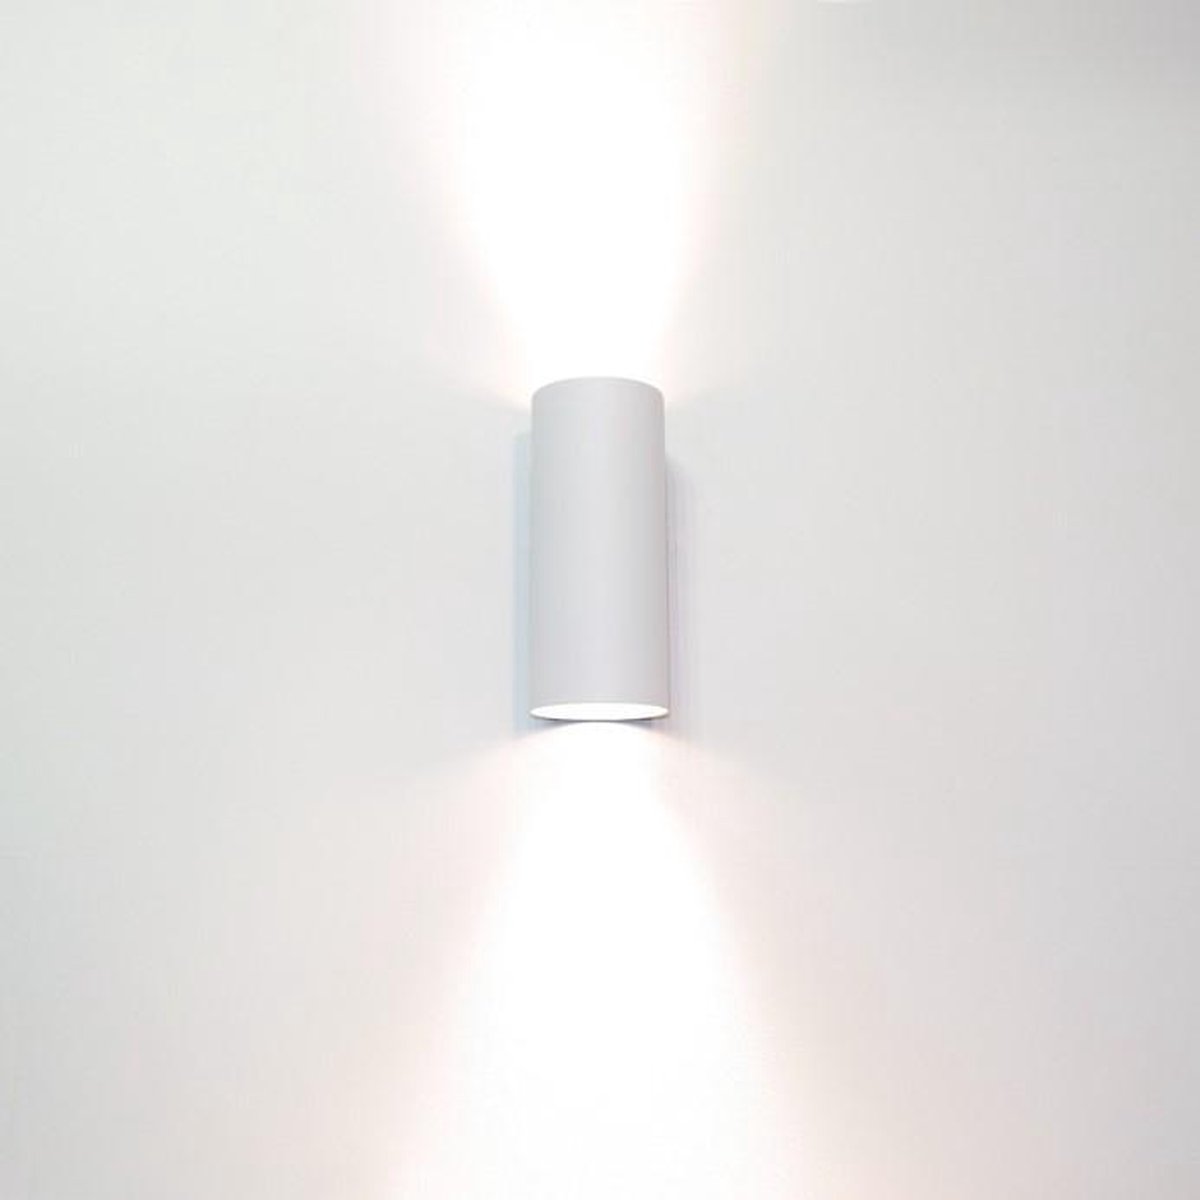 Wandlamp Roulo 2 Wit - Ø6,5xH15,4cm - 2x GU10 LED 4,8W 2700K 355lm - IP20 - Dimbaar > wandlamp wit | wandlamp binnen wit | wandlamp hal wit | wandlamp woonkamer wit | wandlamp slaapkamer wit | led lamp wit | sfeer lamp wit